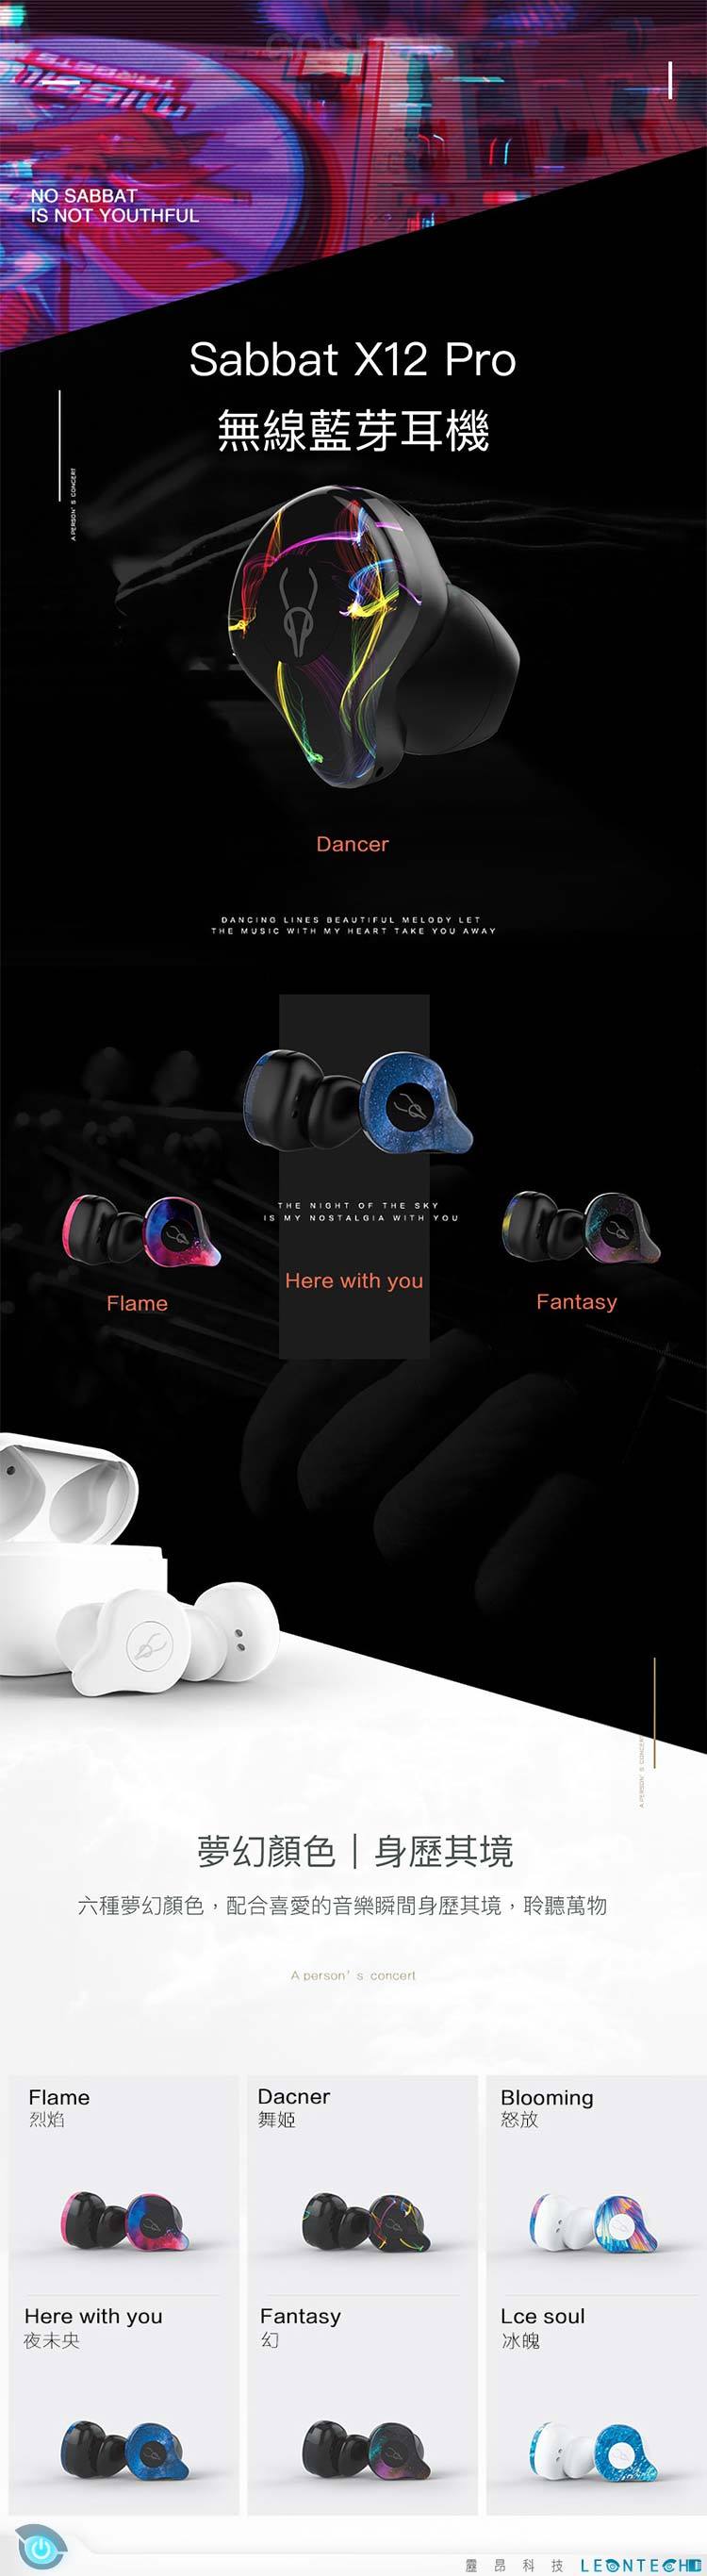 魔宴 X12pro 真無線藍芽耳機 5.0藍牙技術 日本Hi-Res認證 Hi-Fi震撼音質 支援Siri 安卓語音助手功能